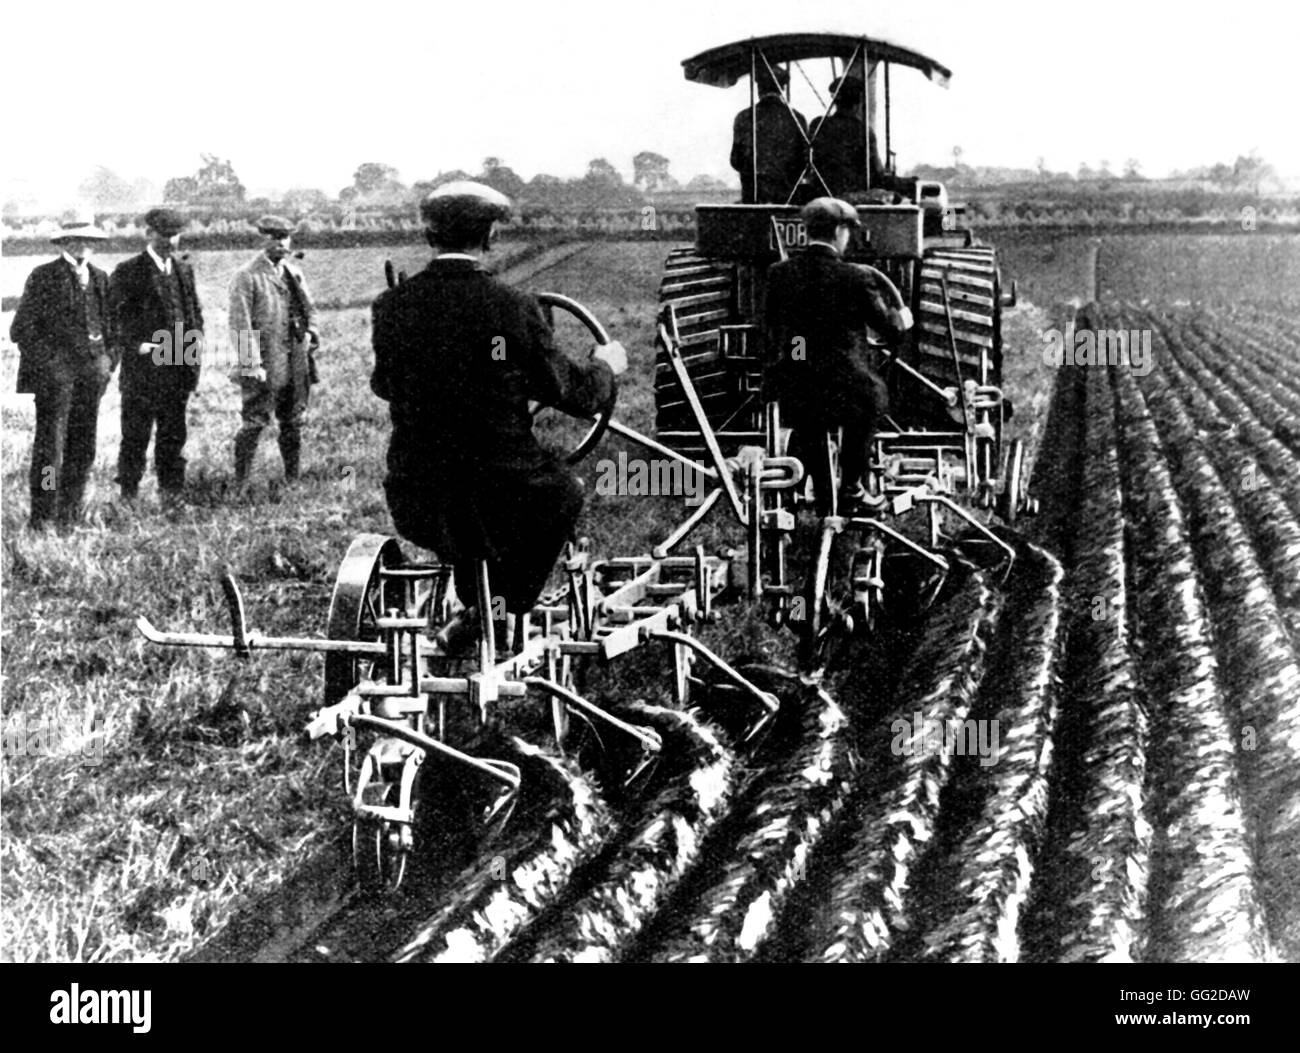 Le revolutionating Machines agriculture : Deux charrues à versoir remorquée par un tracteur à vapeur au début du xxe siècle en France Banque D'Images